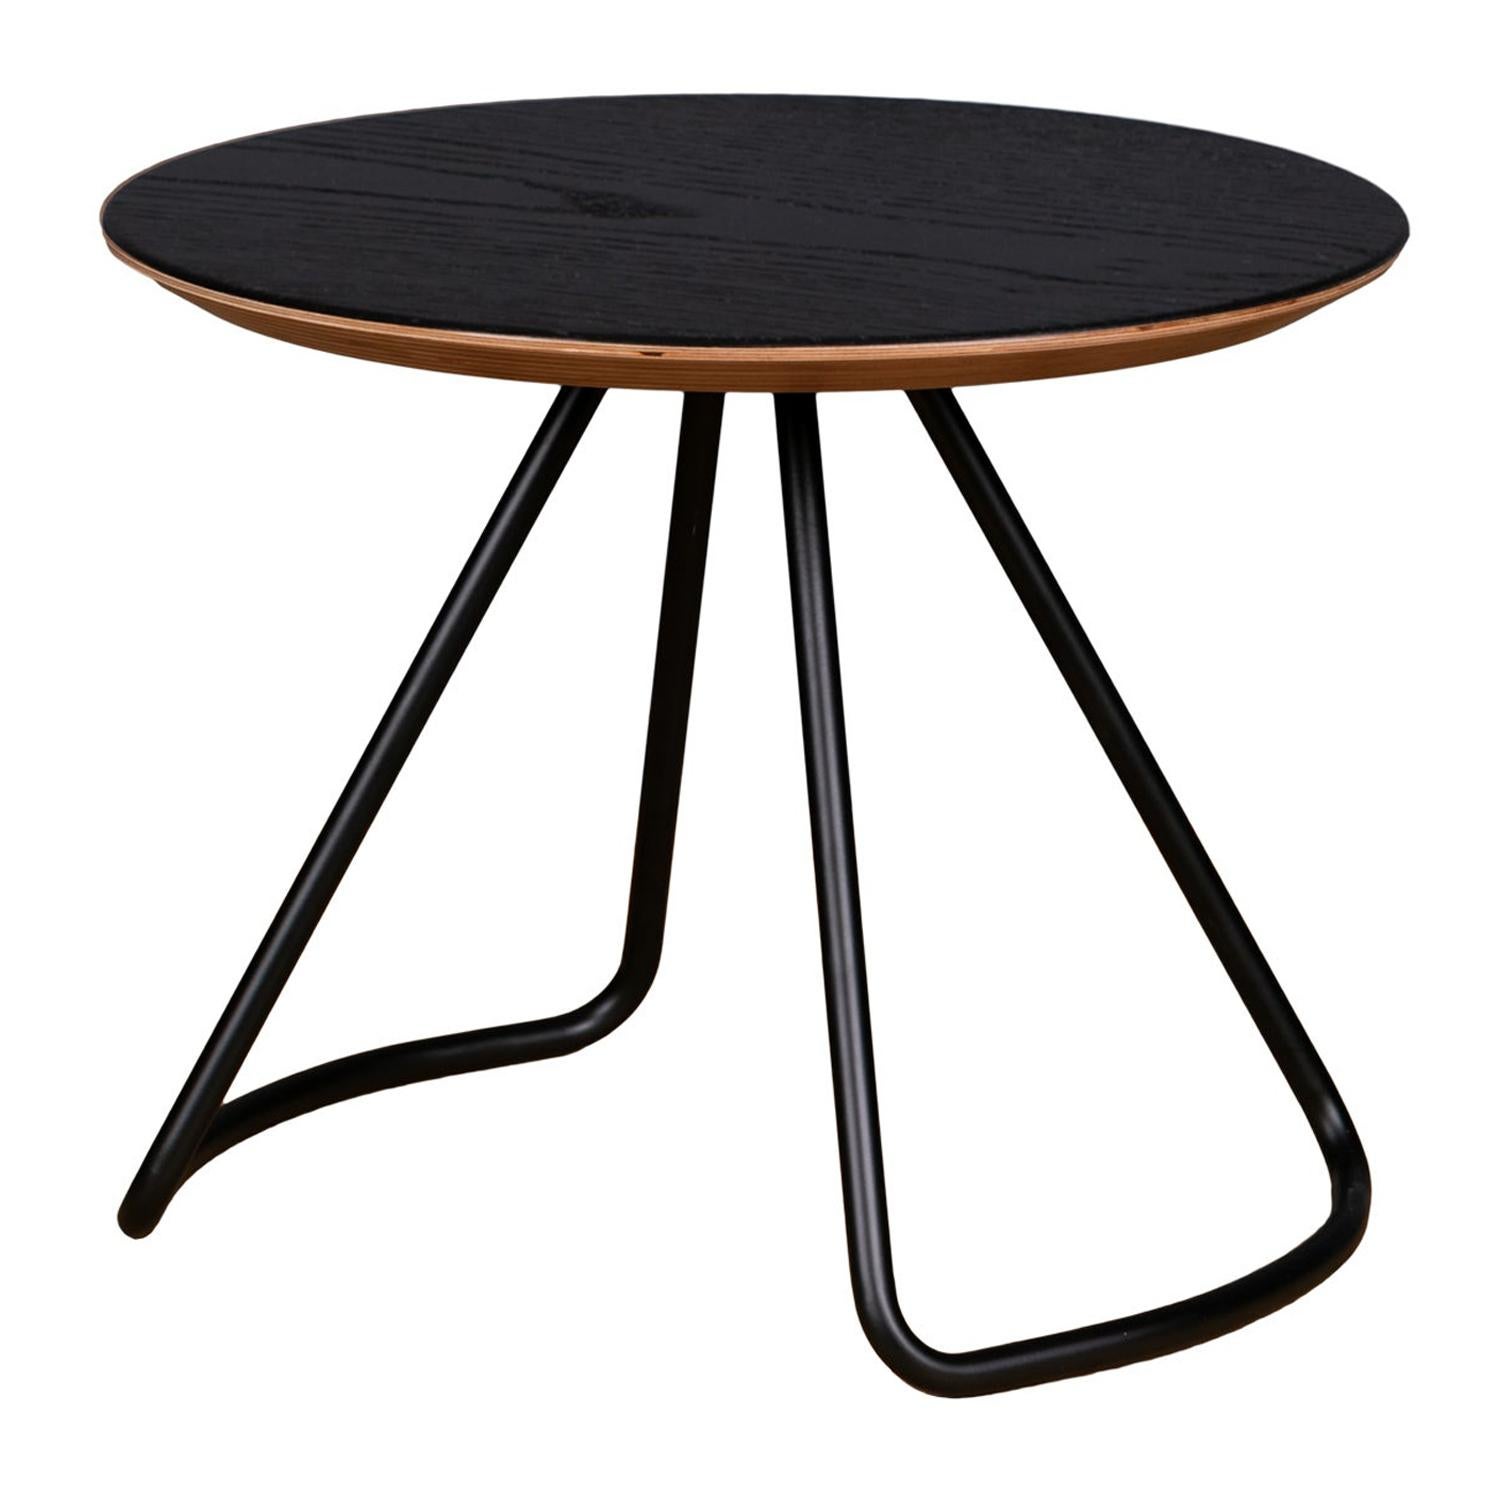 Table basse Sama, table basse moderne contemporaine et minimaliste en chêne noir et métal noir